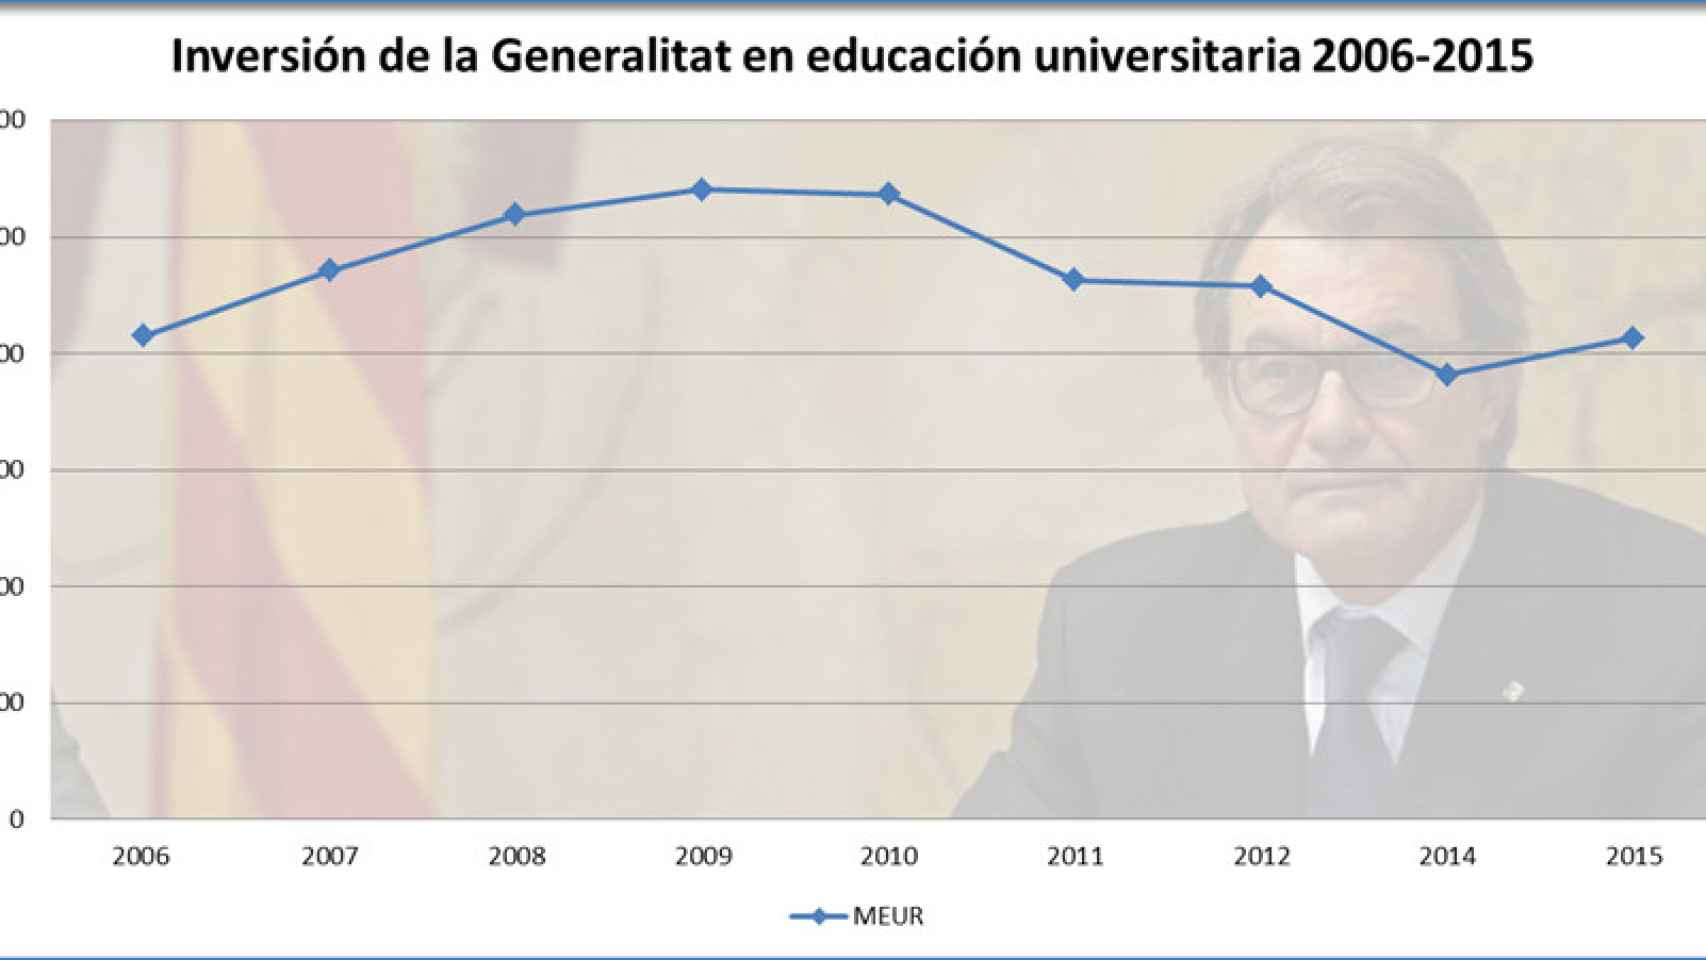 Inversión en educación universitaria en los presupuestos de la Generalitat de los años 2006 a 2015.